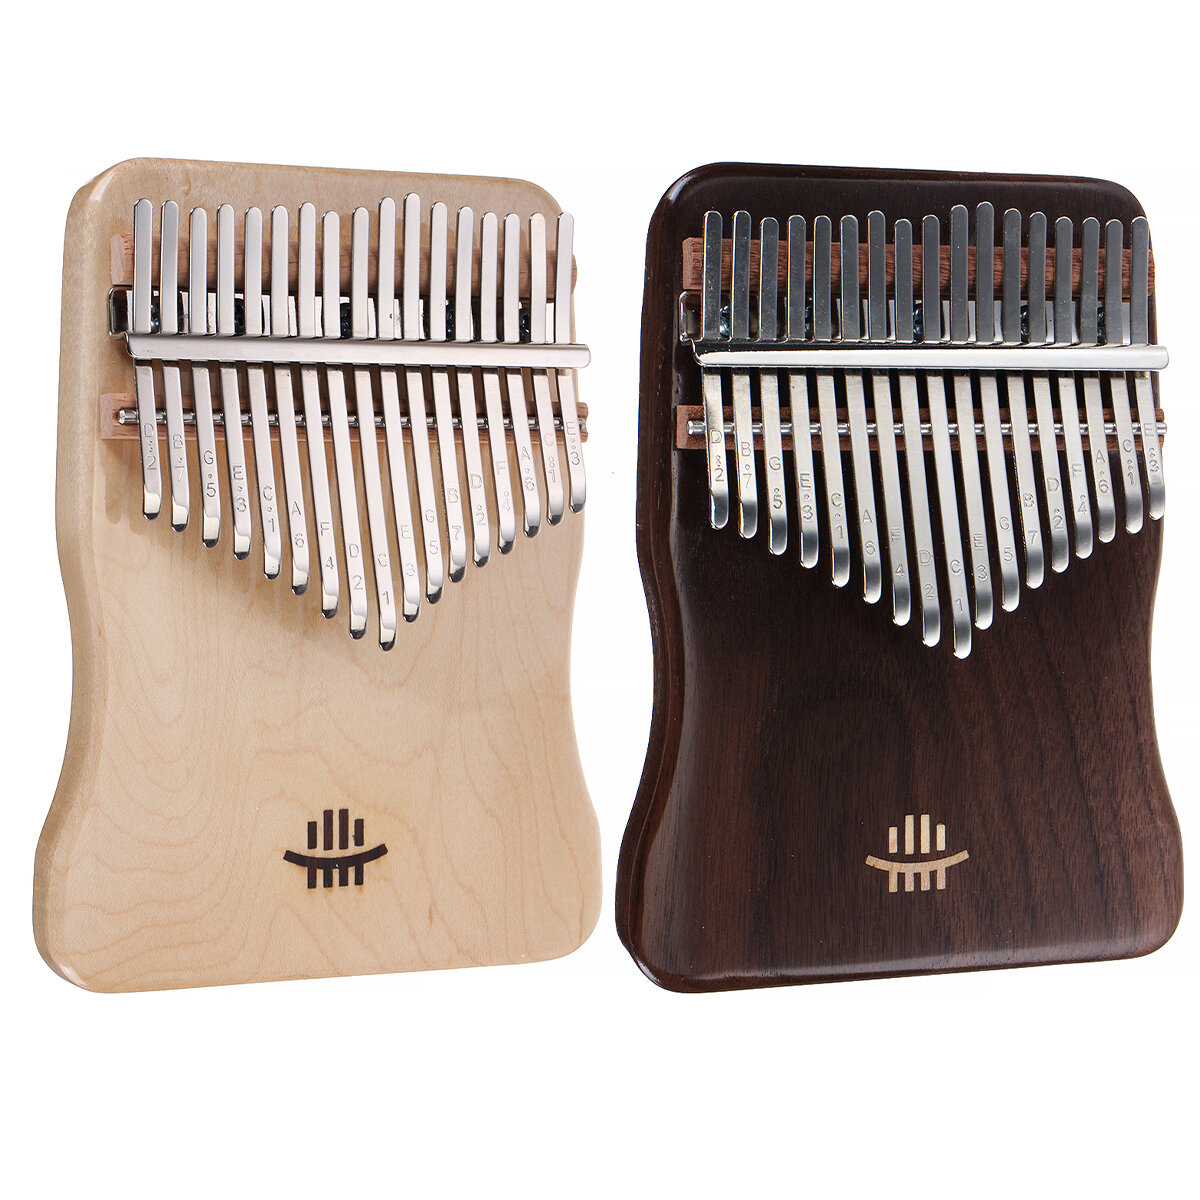 

17 Key Kalimba Finger Hand Piano Mahogany Thumb Piano Wood Музыкальный инструмент Набор